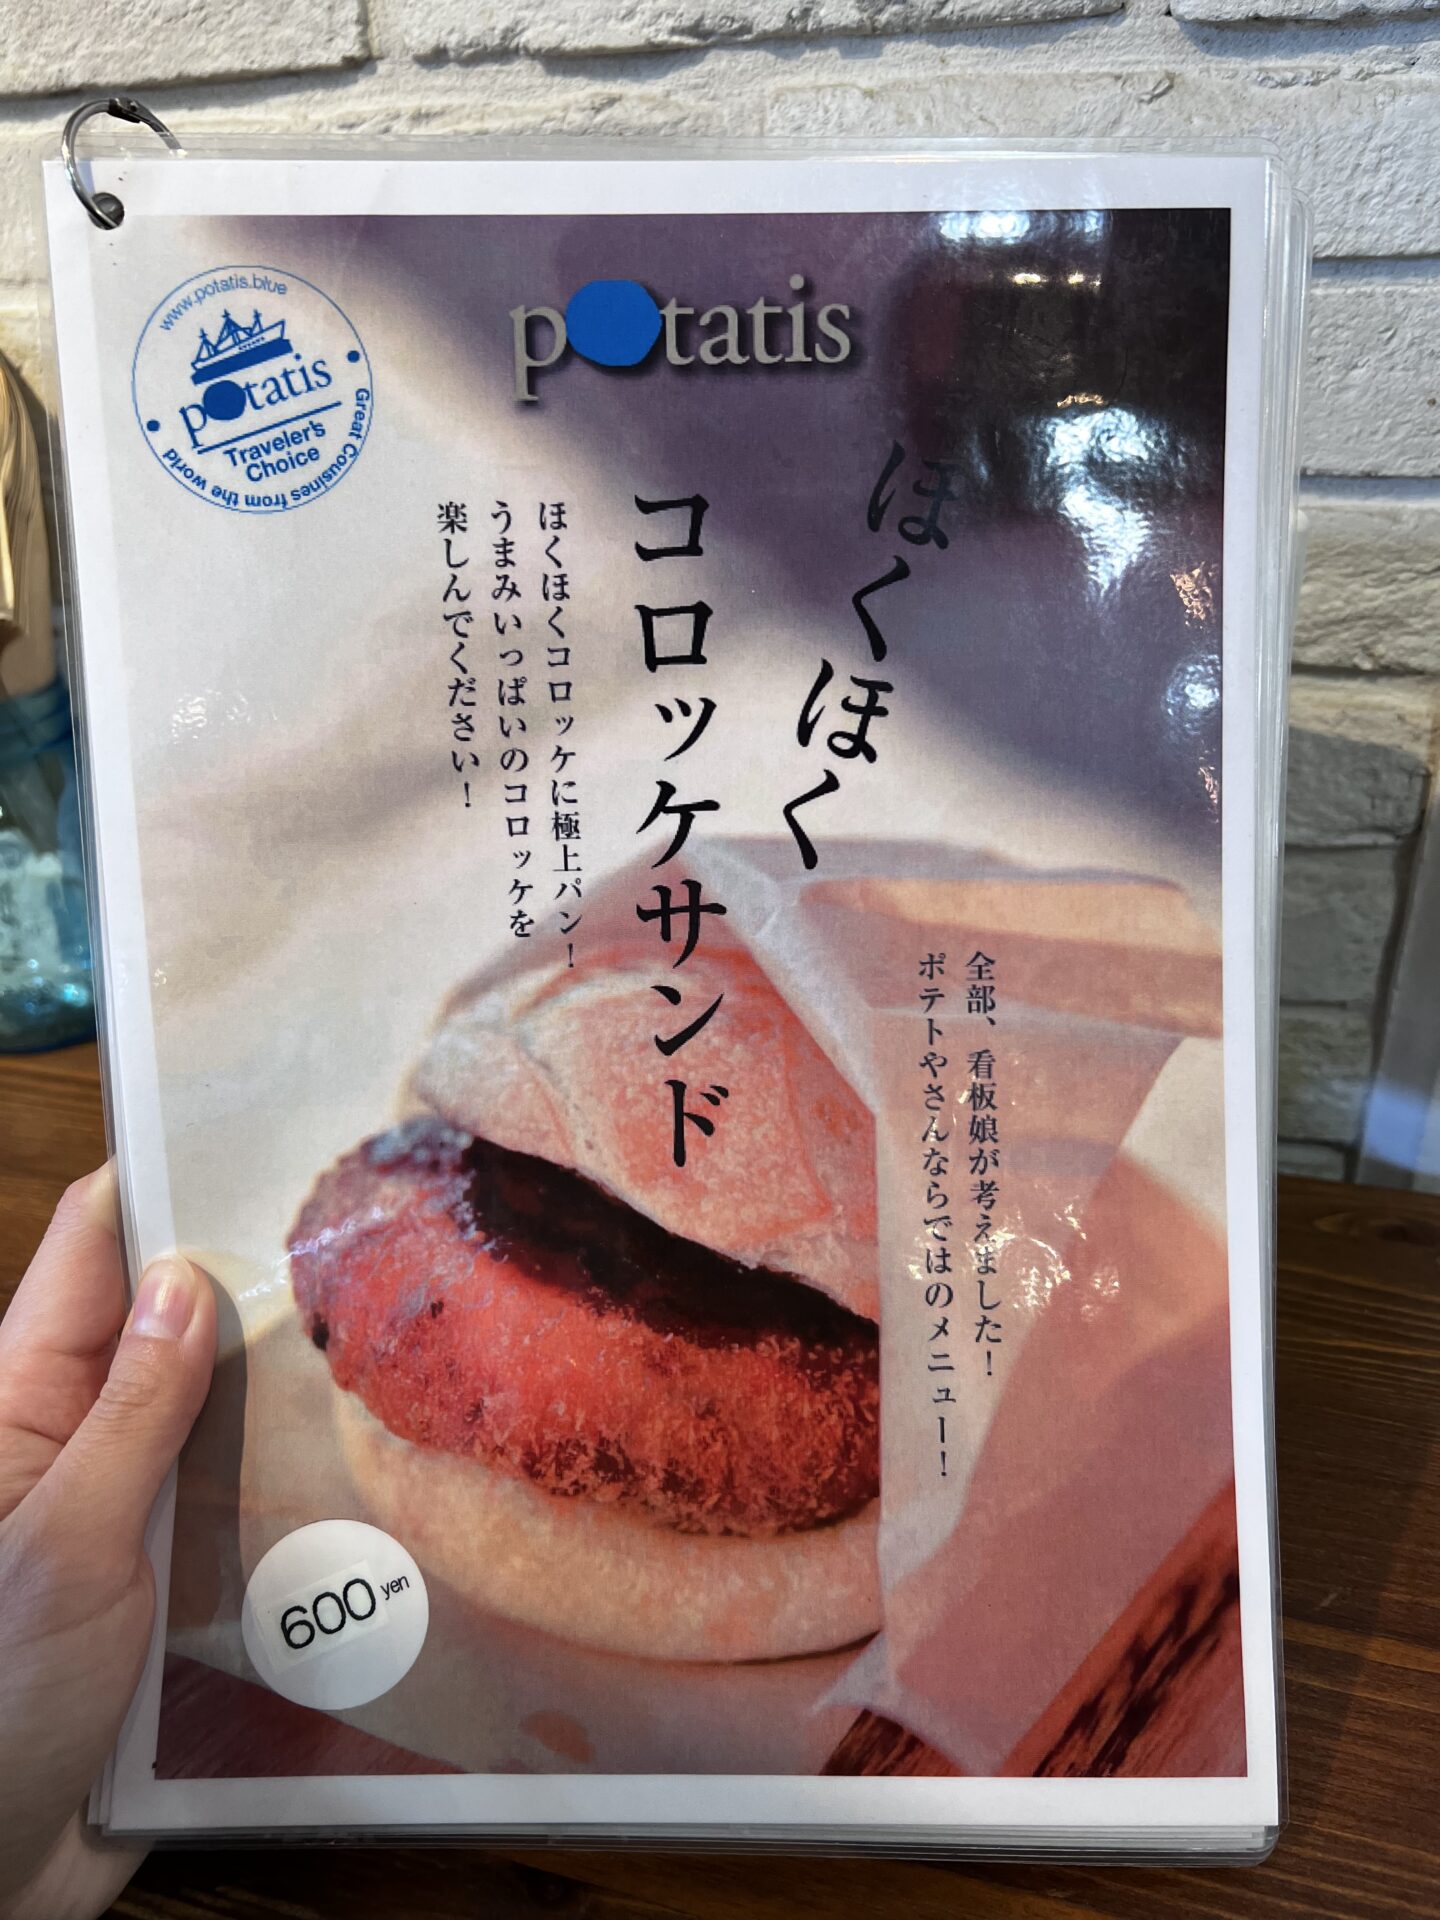 potatis メニュー6